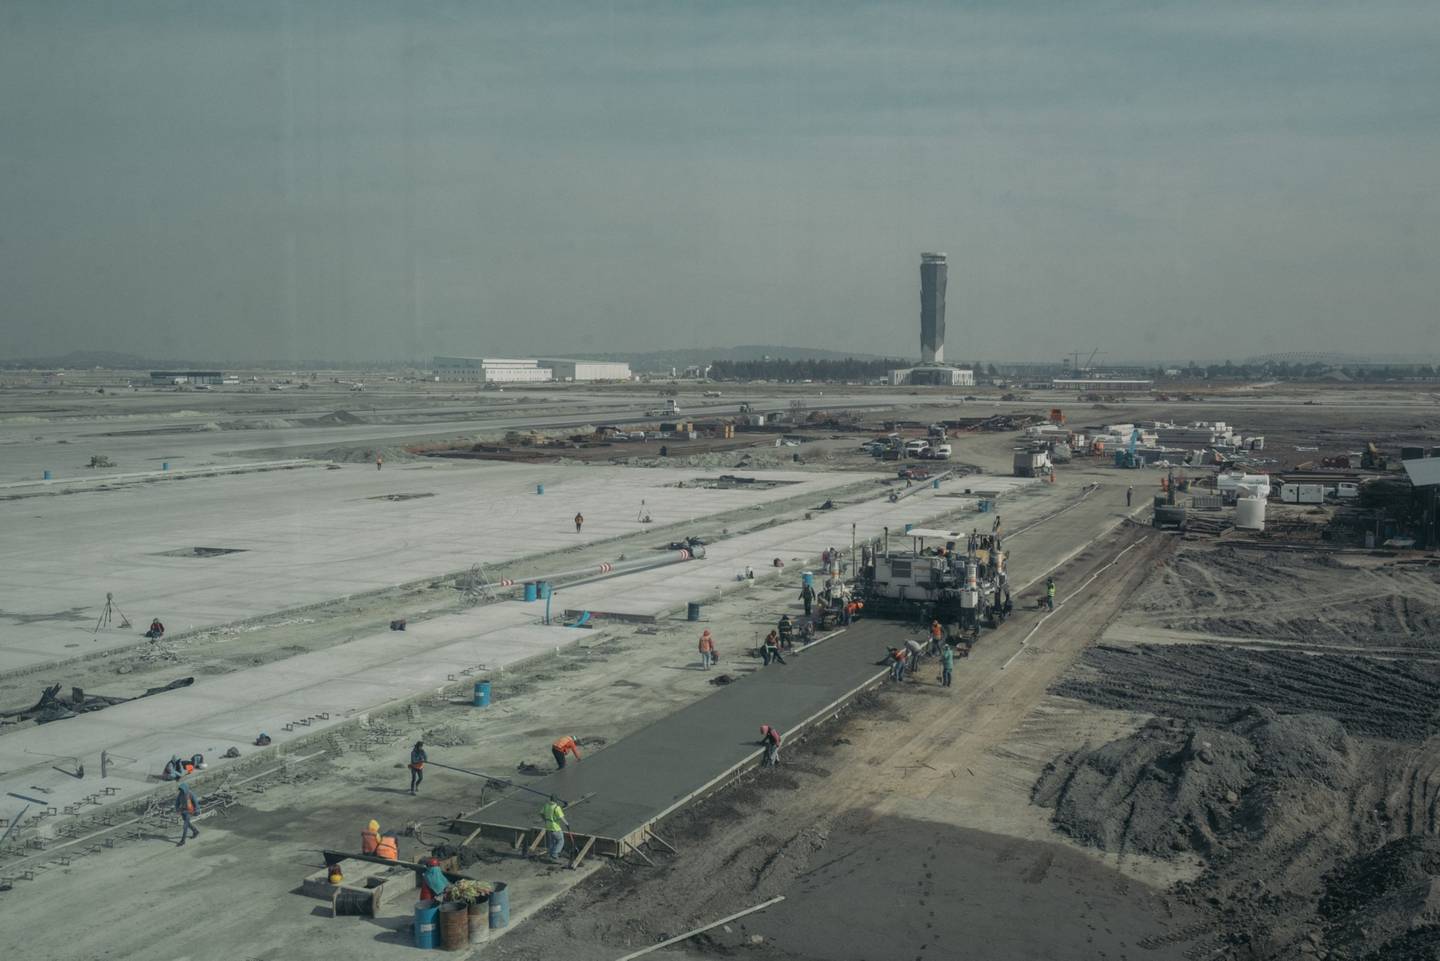 Obras finales del Aeropuerto Internacional Felipe Ángeles dentro de la base militar de Santa Lucía en el municipio de Zumpango, Estado de México.